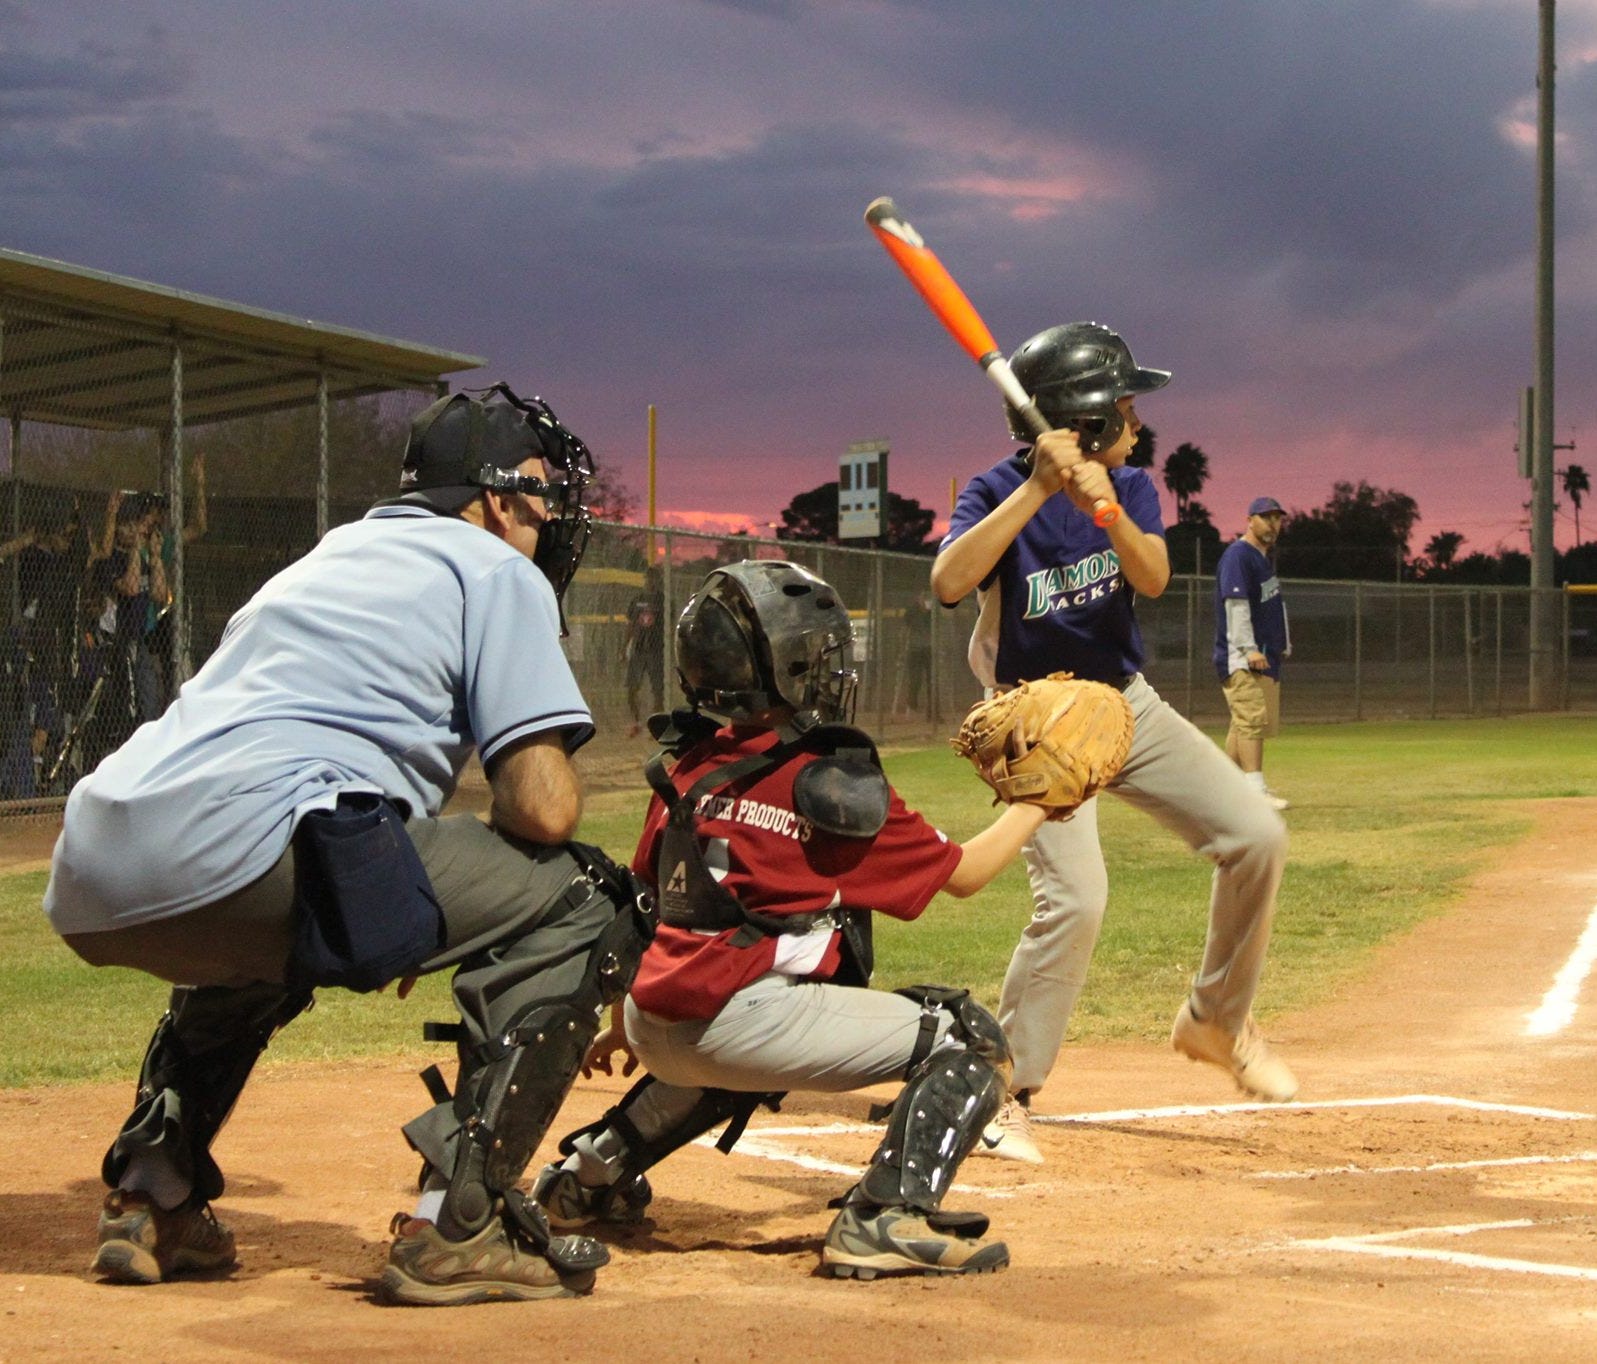 Little League baseball. August 11, 2014.